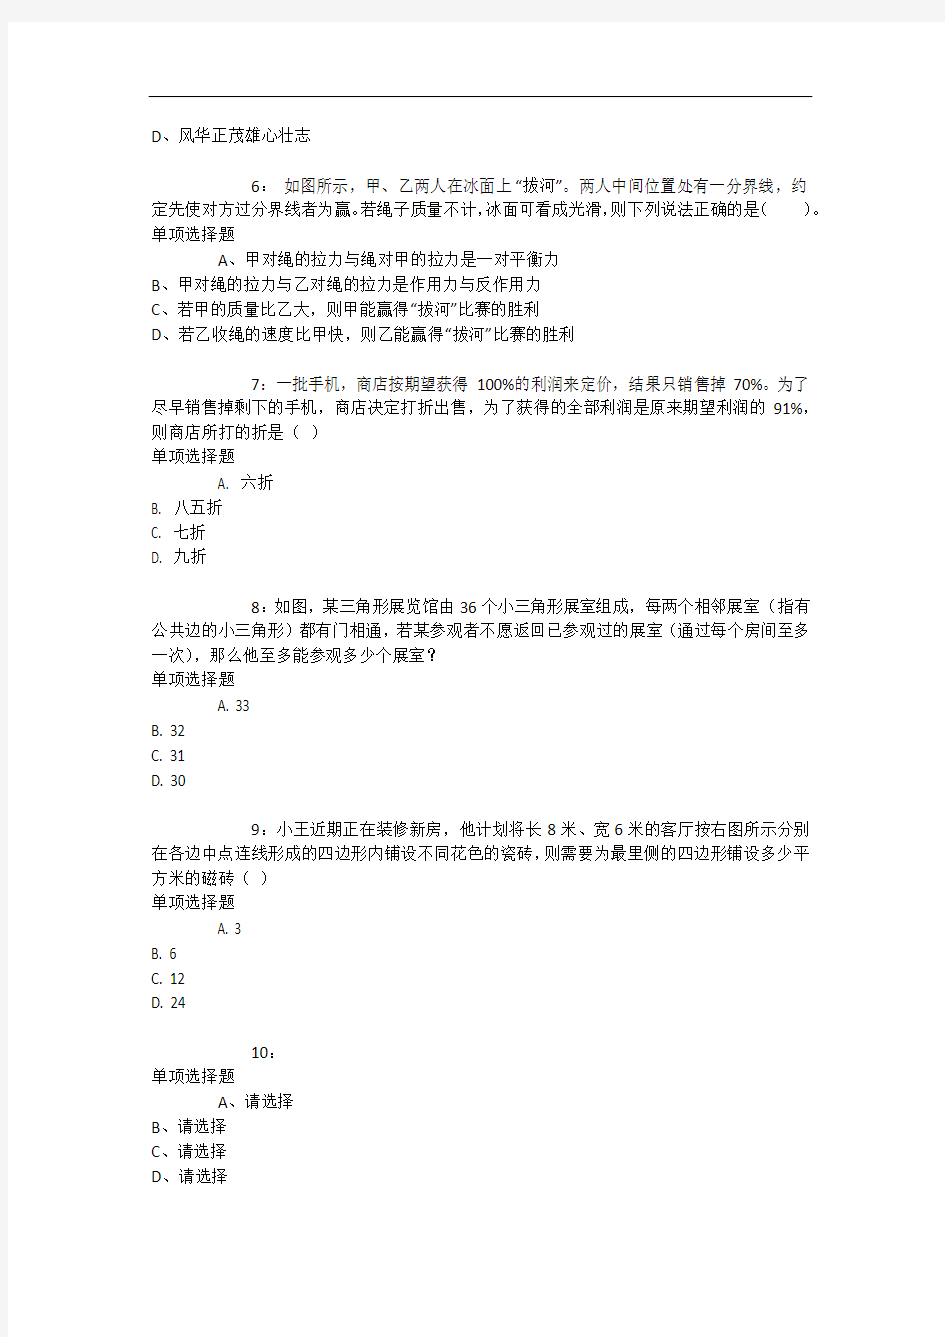 上海公务员考试《行测》通关模拟试题及答案解析【2019】：74 - 行测模拟题_7